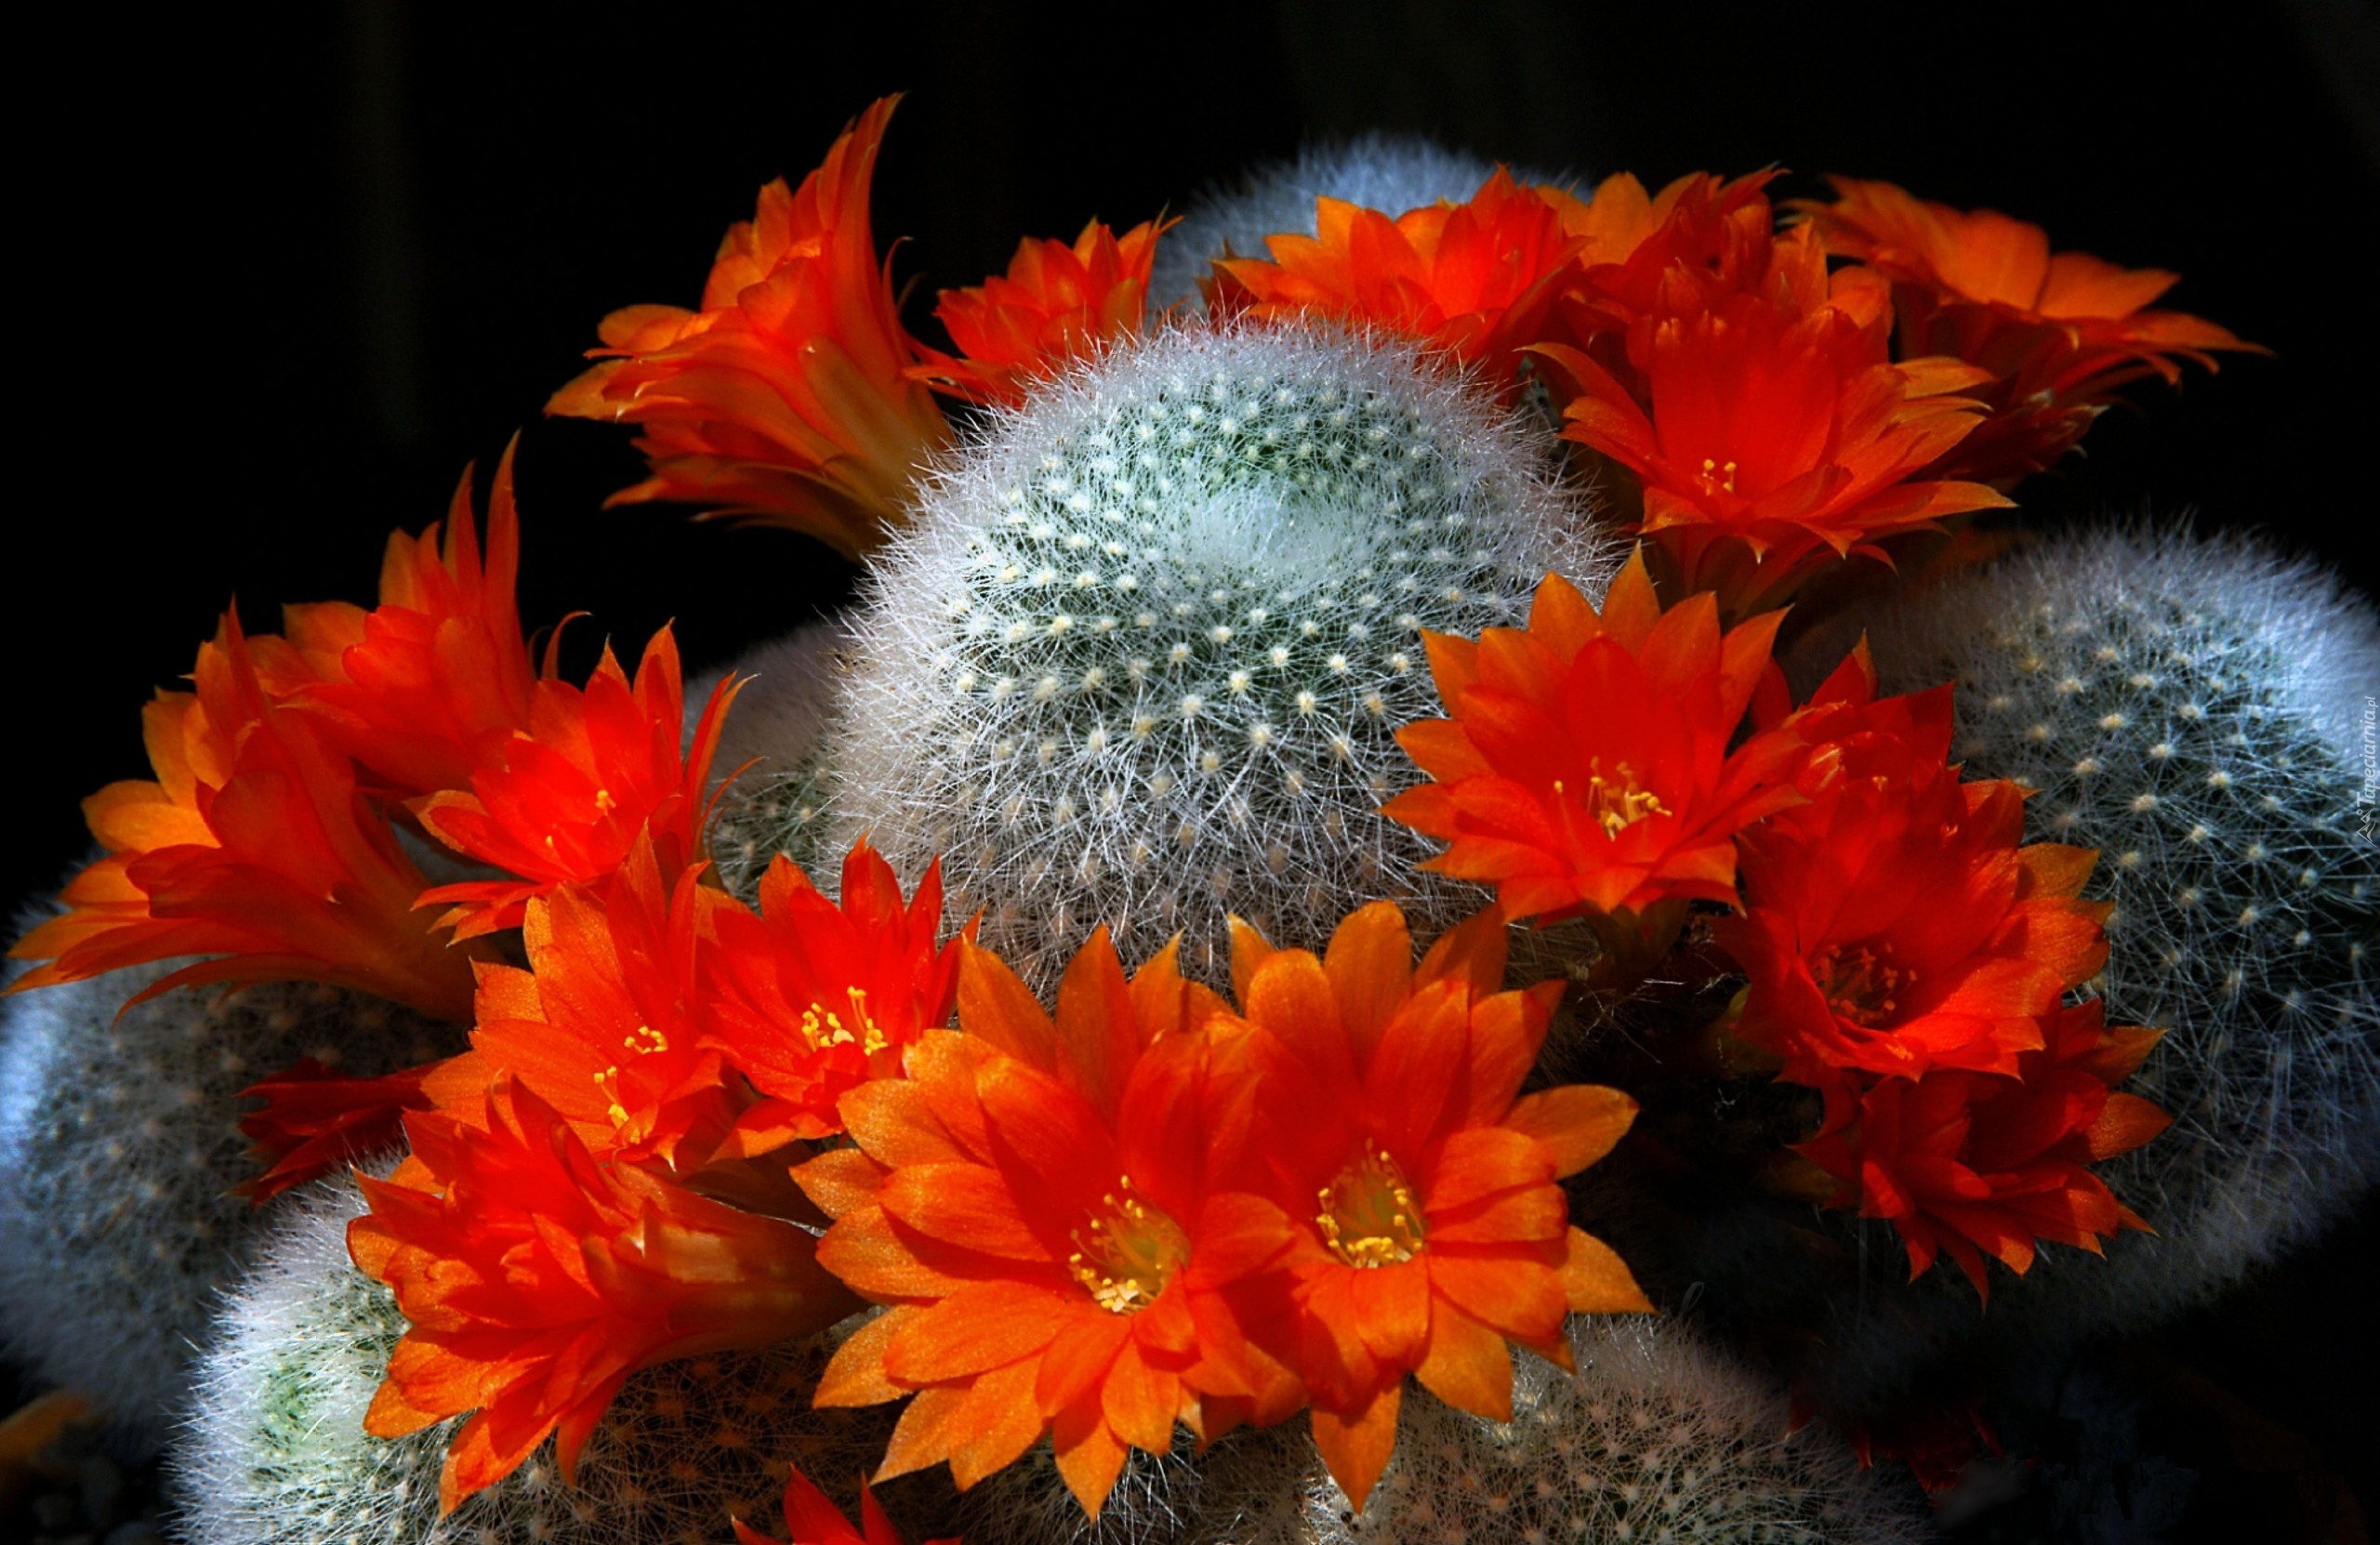 Kaktus, Pomarańczowe, Kwiaty